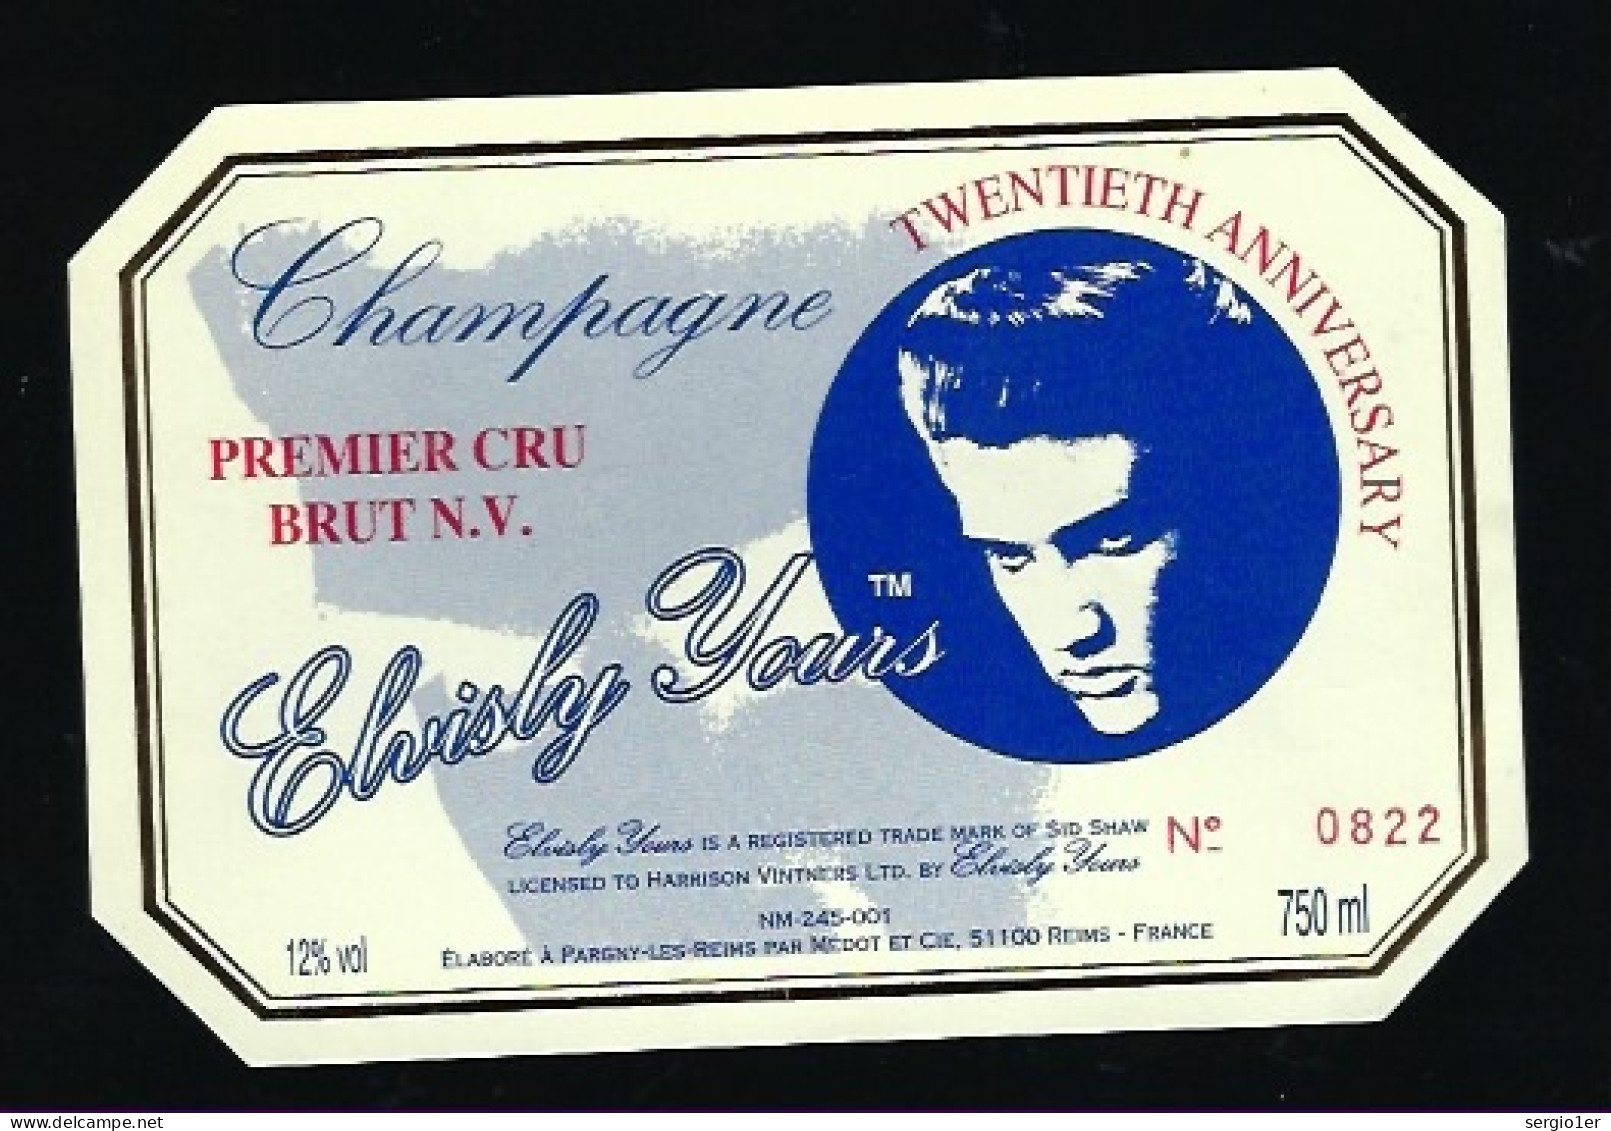 Etiquette Champagne Brut 1er Cru Elvis Presley Vingtieme Anniversaire  étiquette Numérotée 0822  Médot Et Cie Reims Marn - Champagne